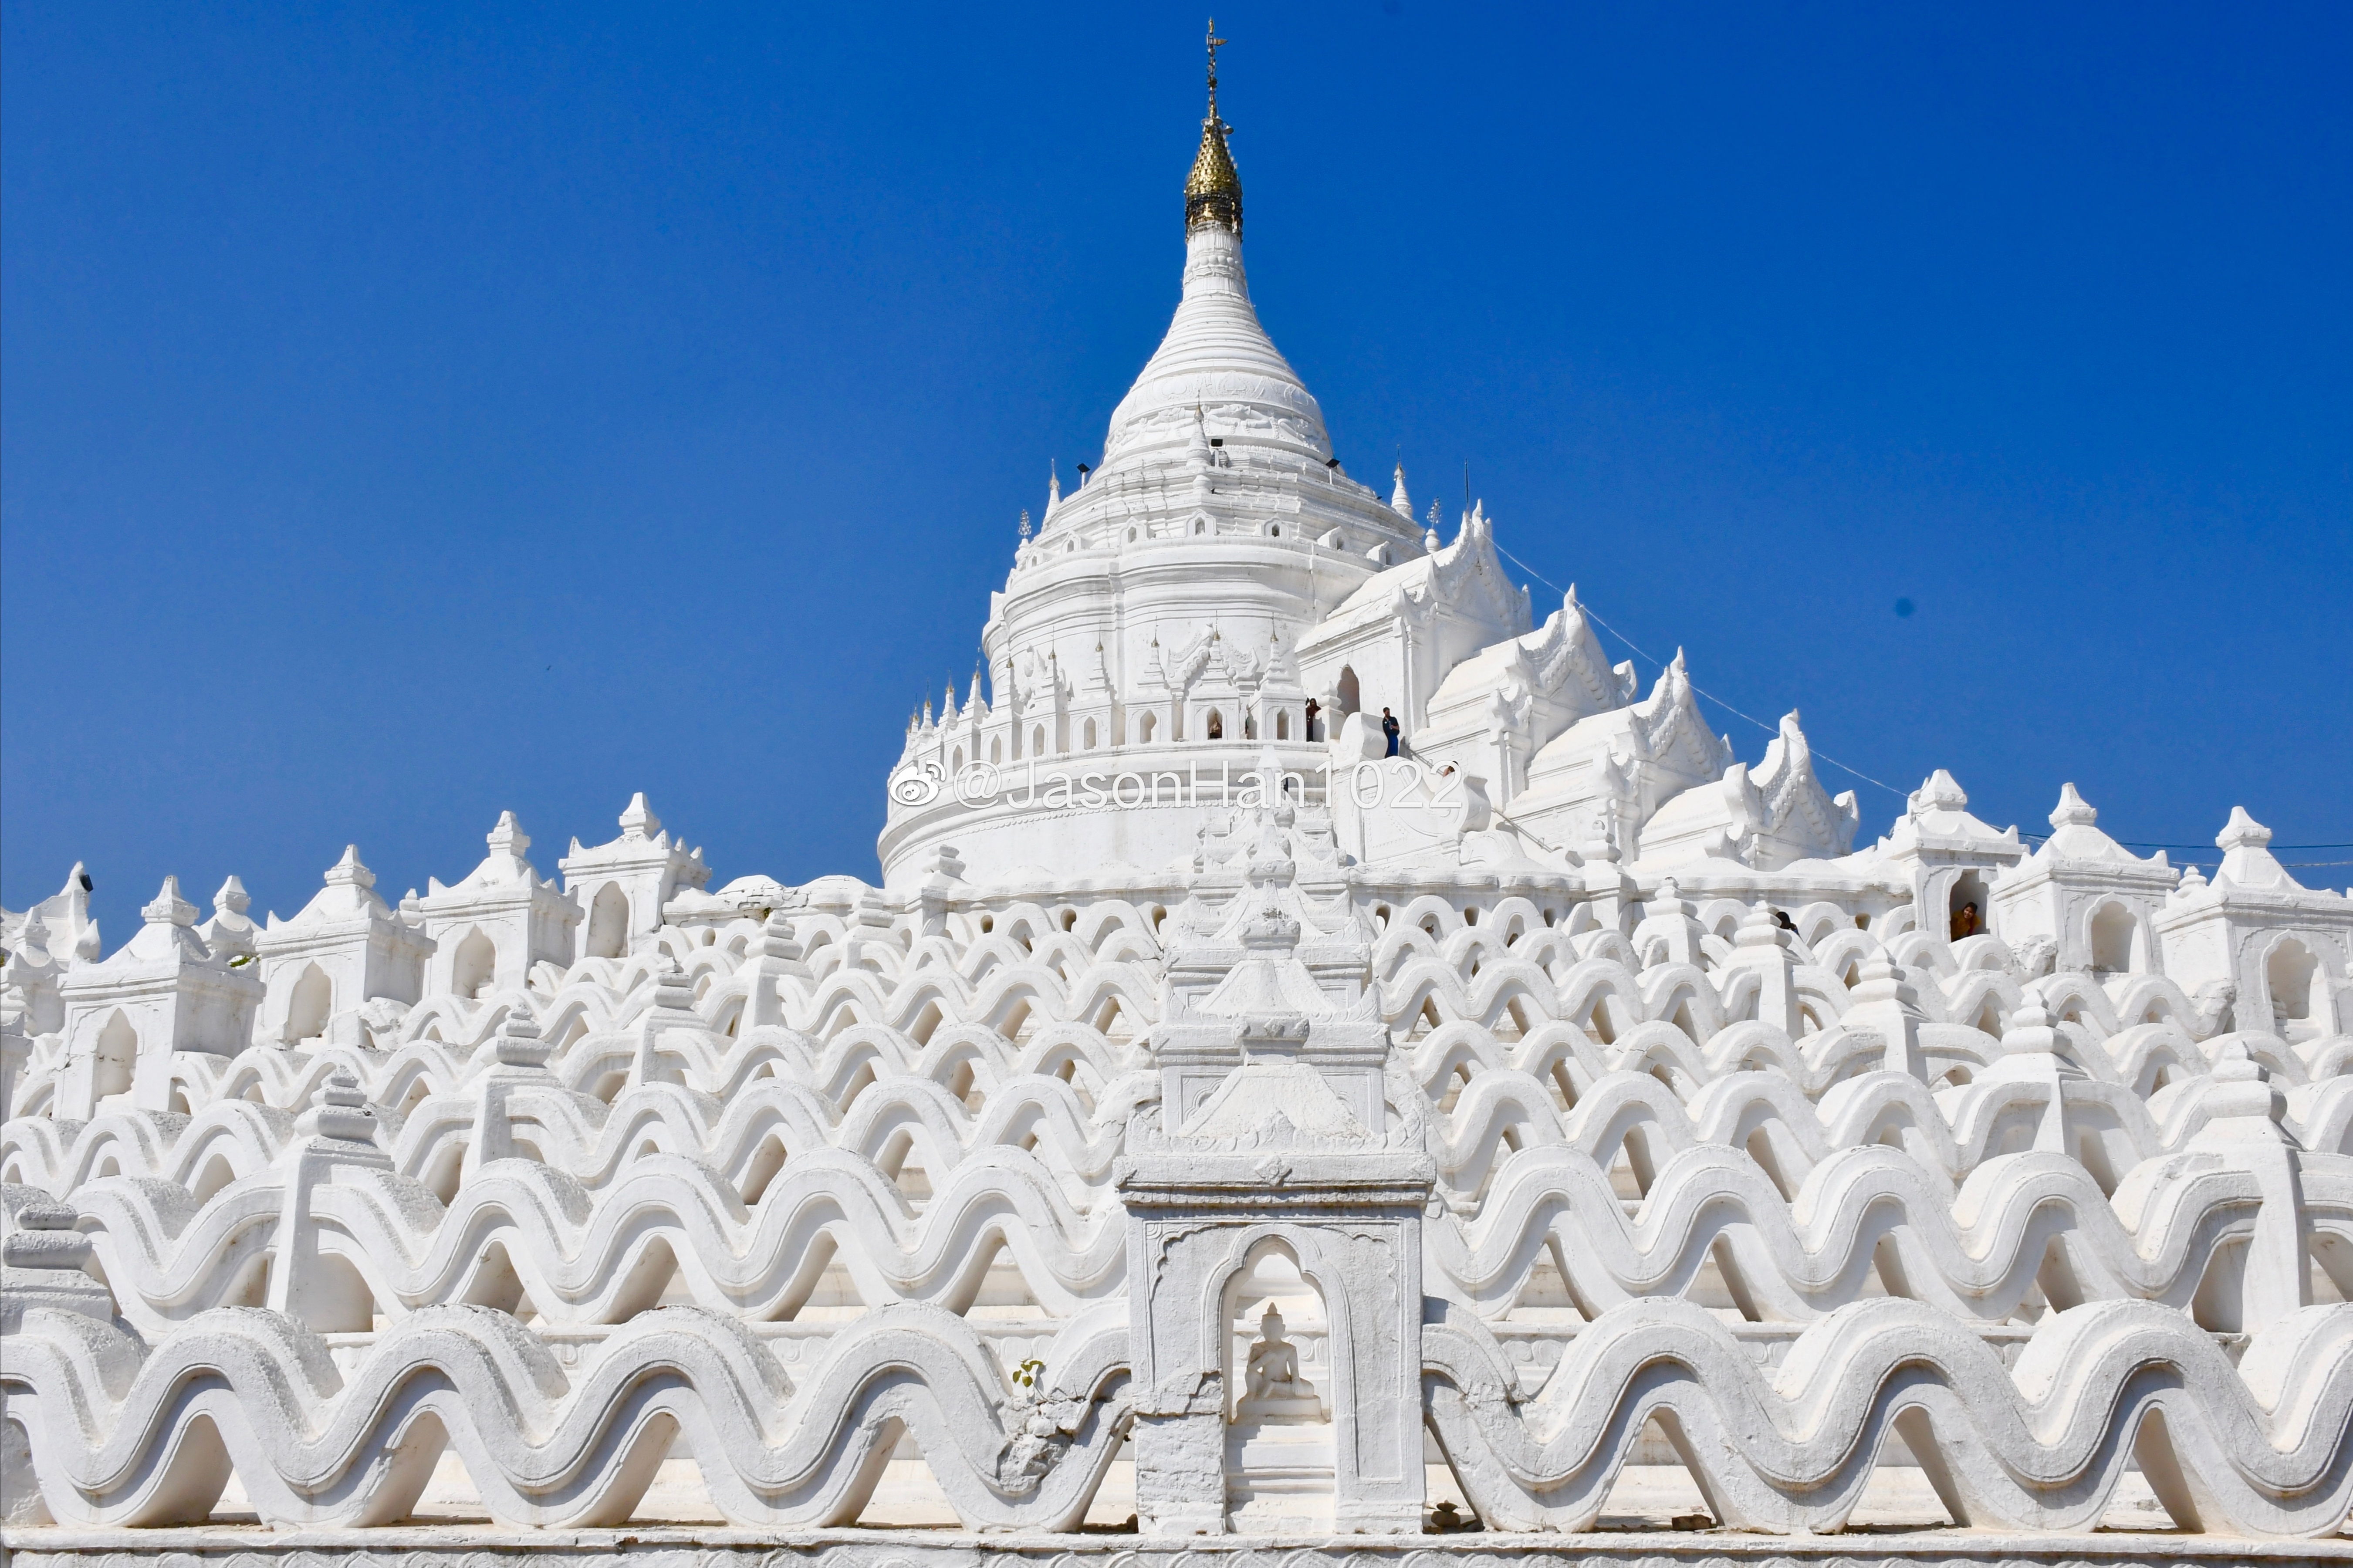 缅甸旅游:2019年全年游客436万人,中国游客占比大